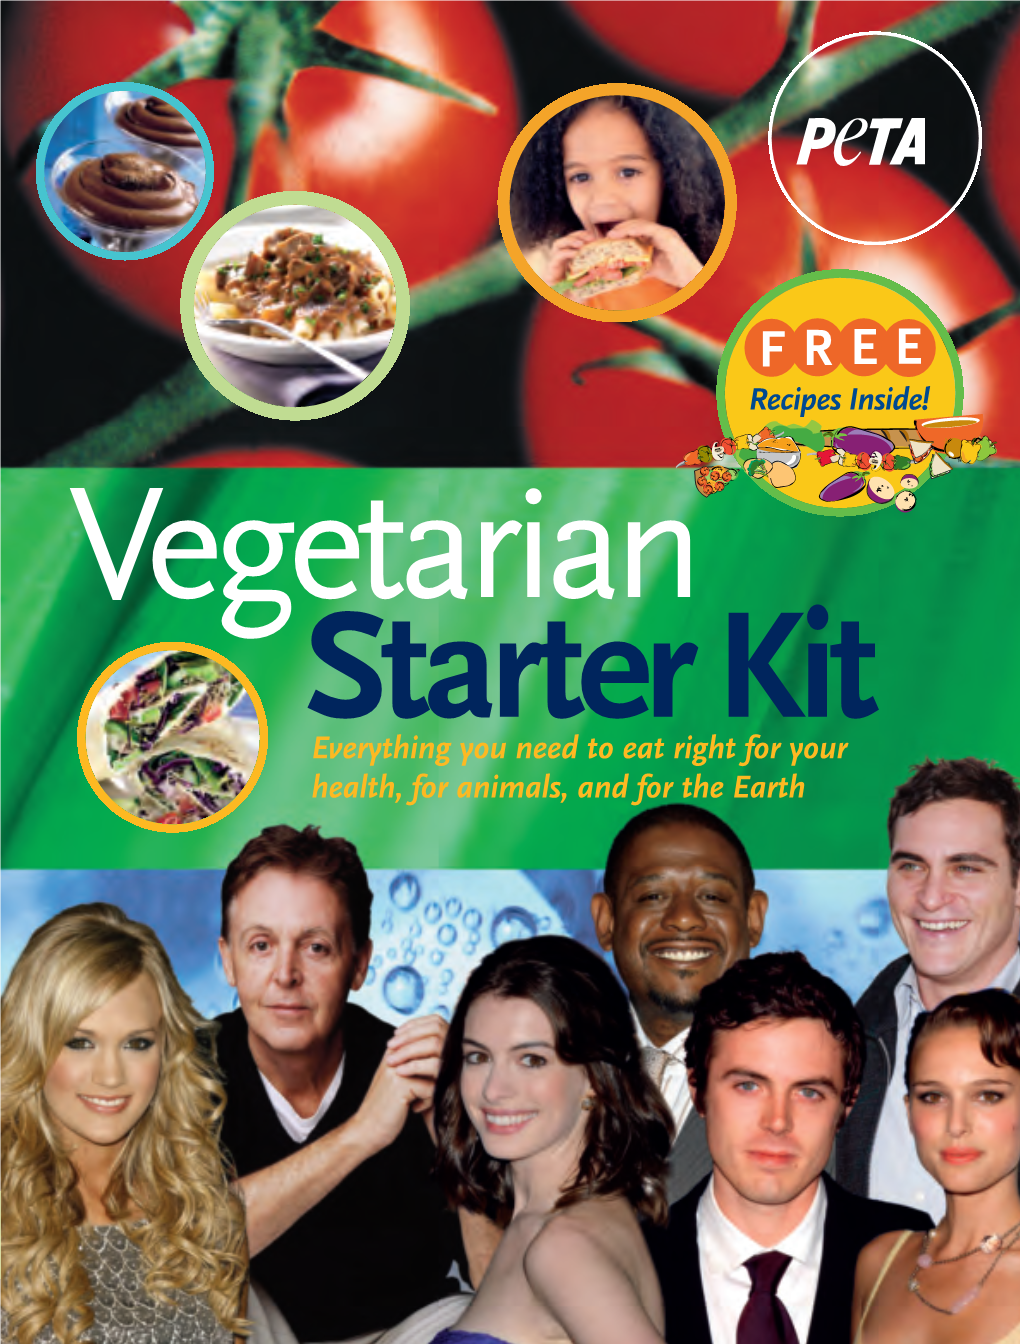 Print Version of PETA's 'Vegetarian Starter Kit'